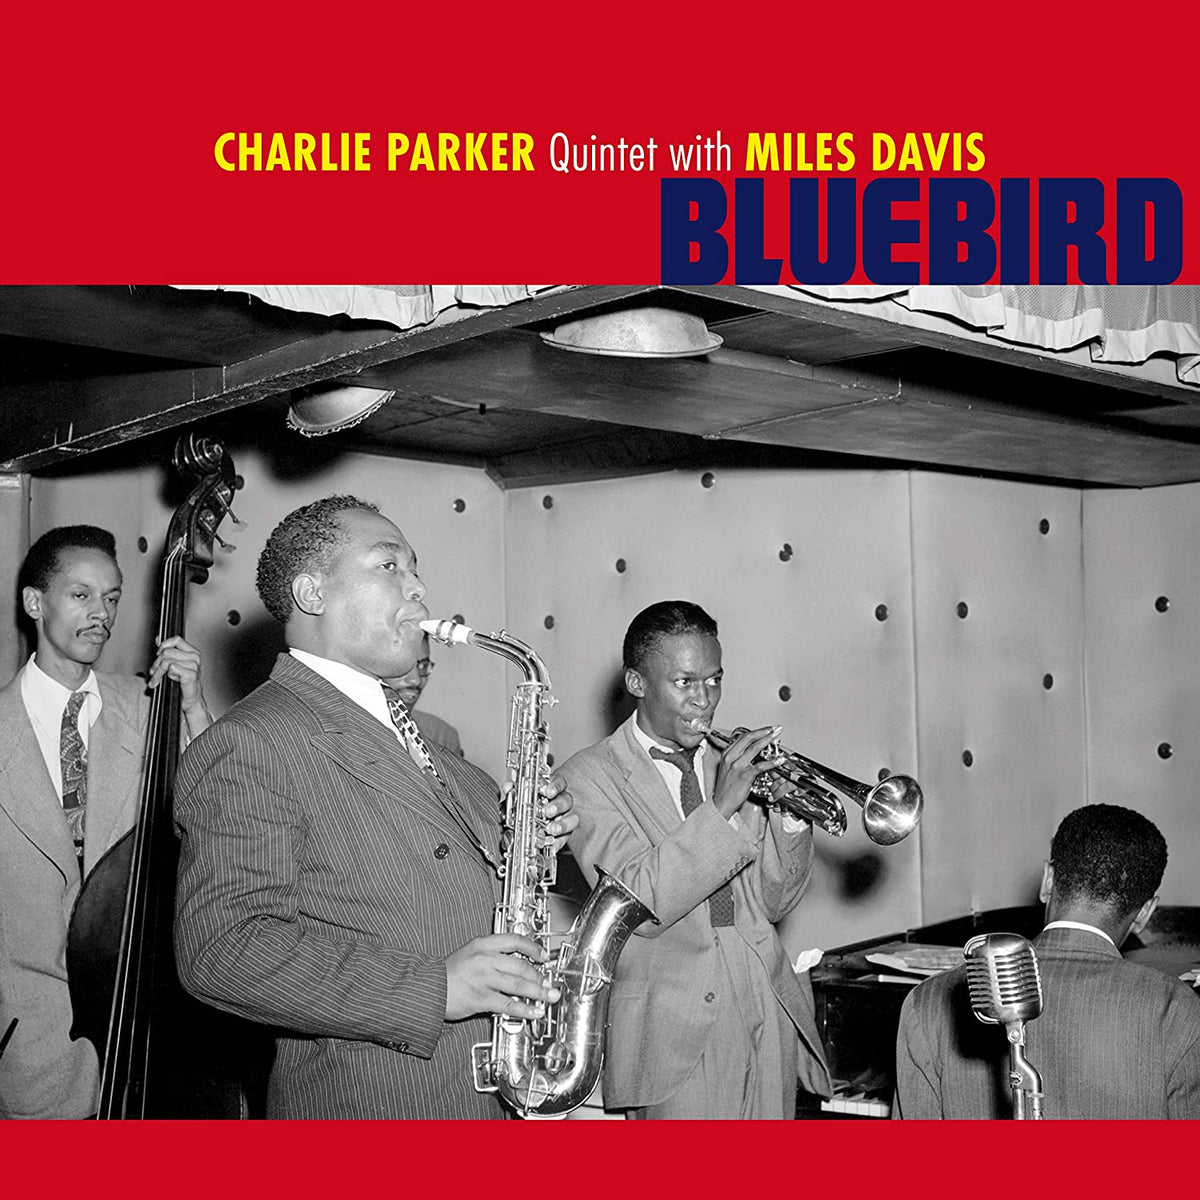 CHARLIE PARKER QUINTET WITH MILES DAVIS - BLUEBIRD [COLOUR VINYL]